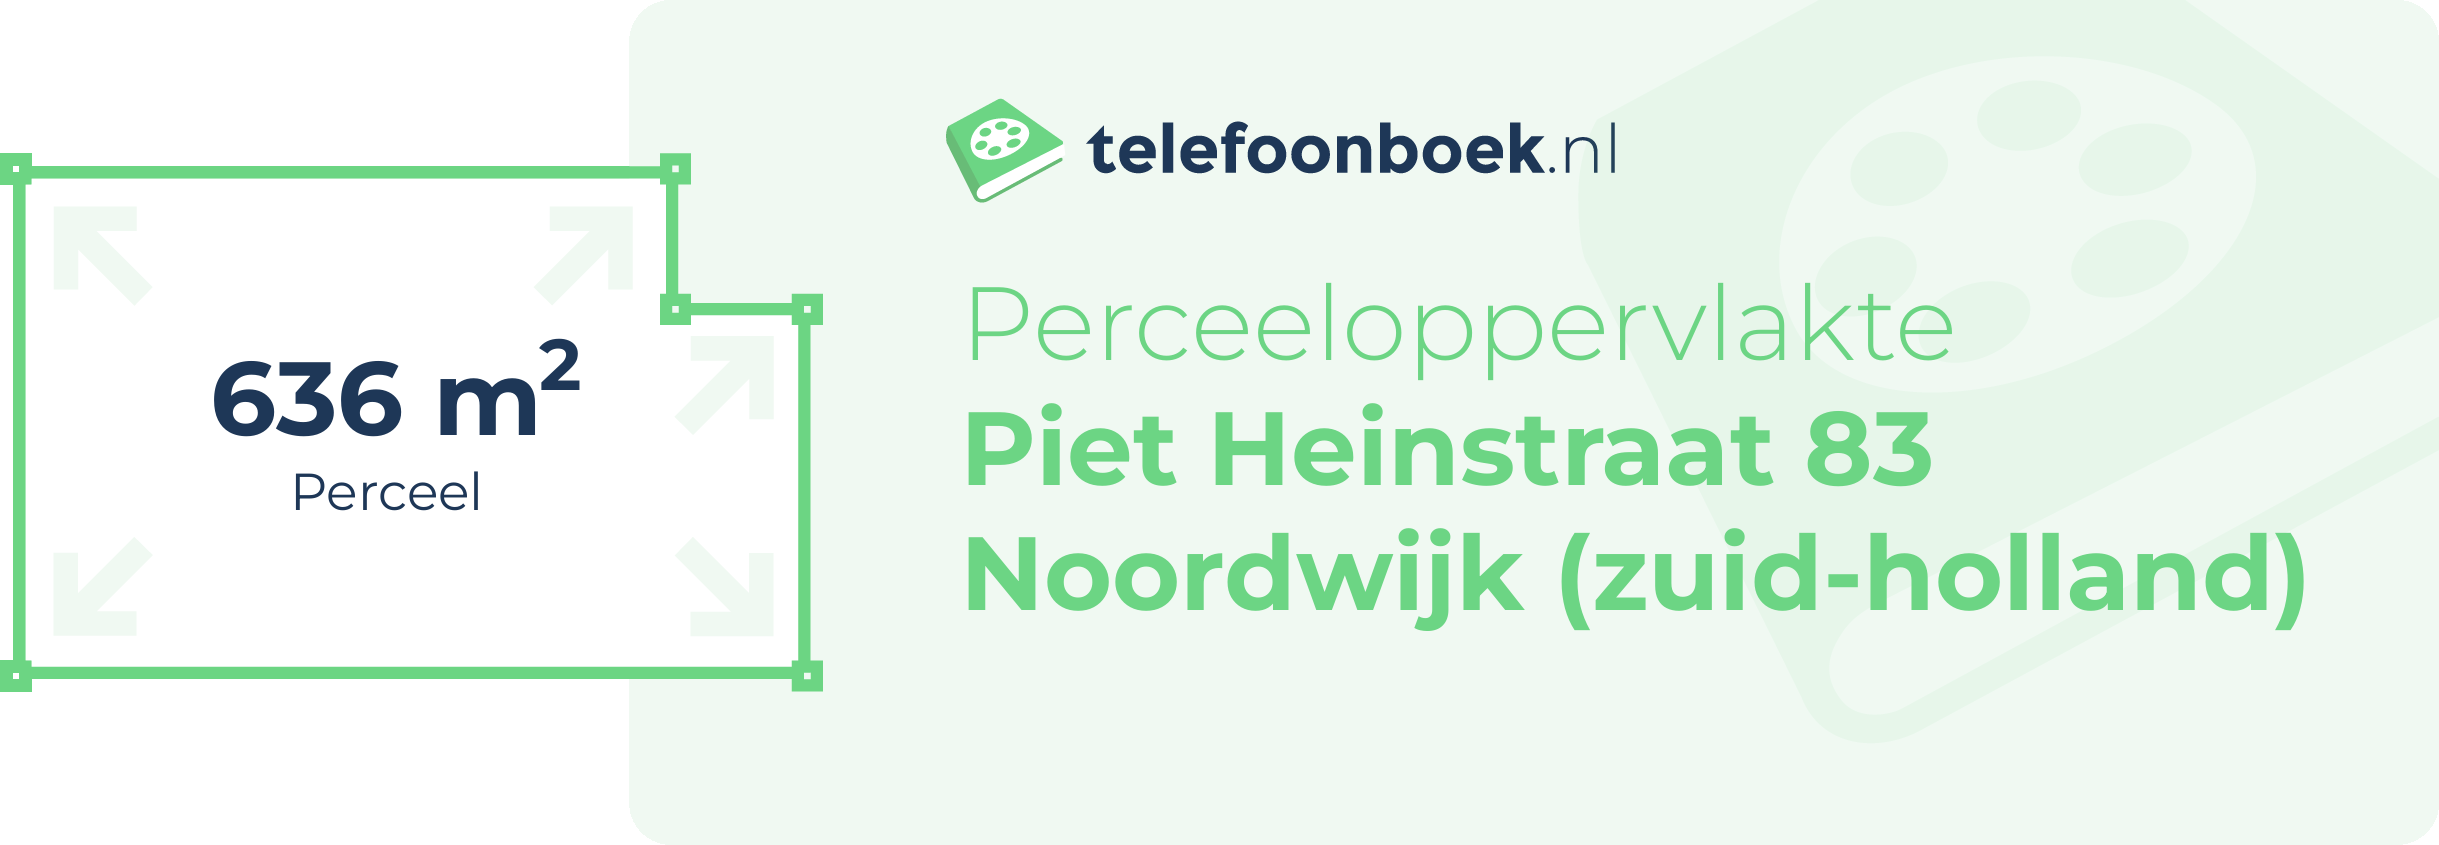 Perceeloppervlakte Piet Heinstraat 83 Noordwijk (Zuid-Holland)